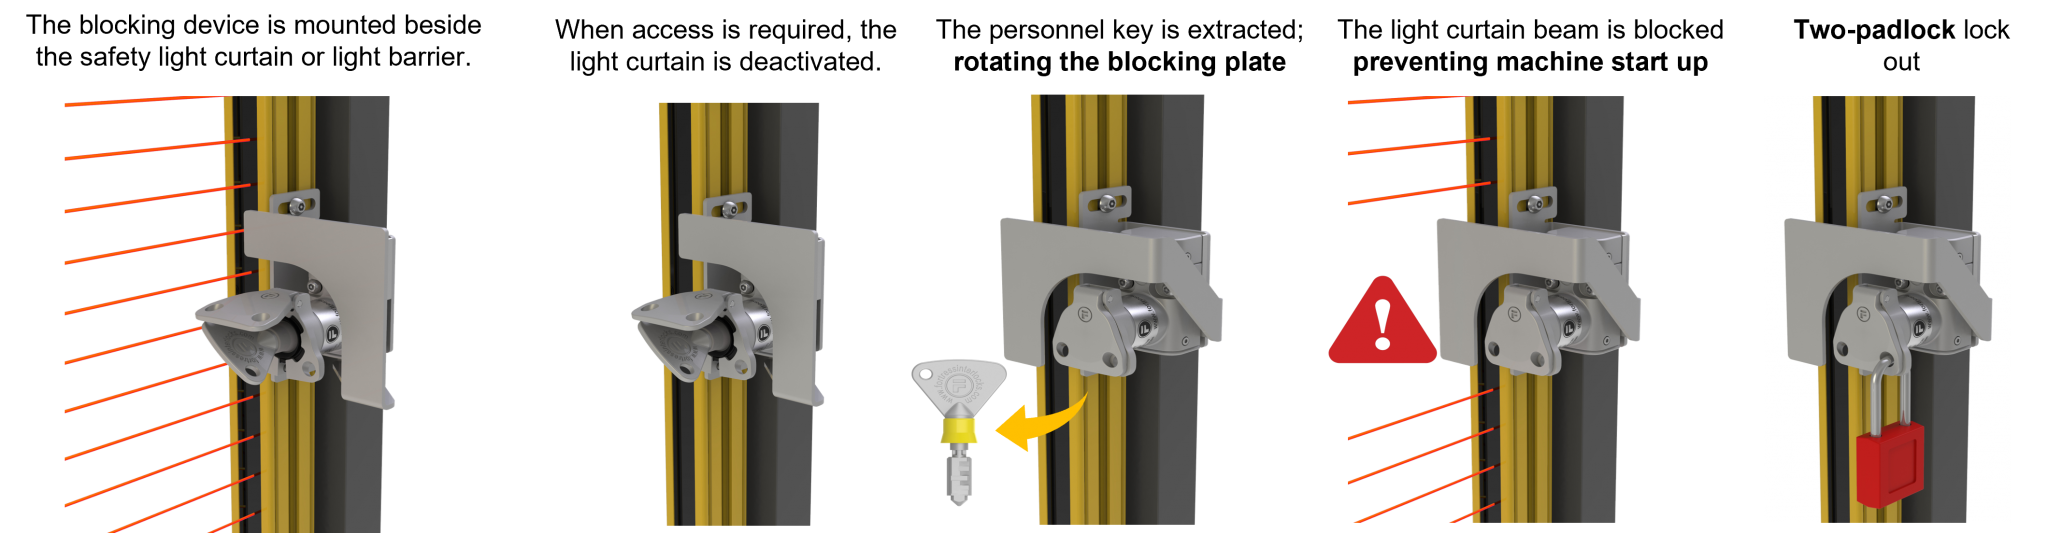 Cách thức hoạt động của thiết bị chặn quang điện Photoelectric Blocking Device – PBL - Khóa hàng rào an toàn - Safety Guard Lock